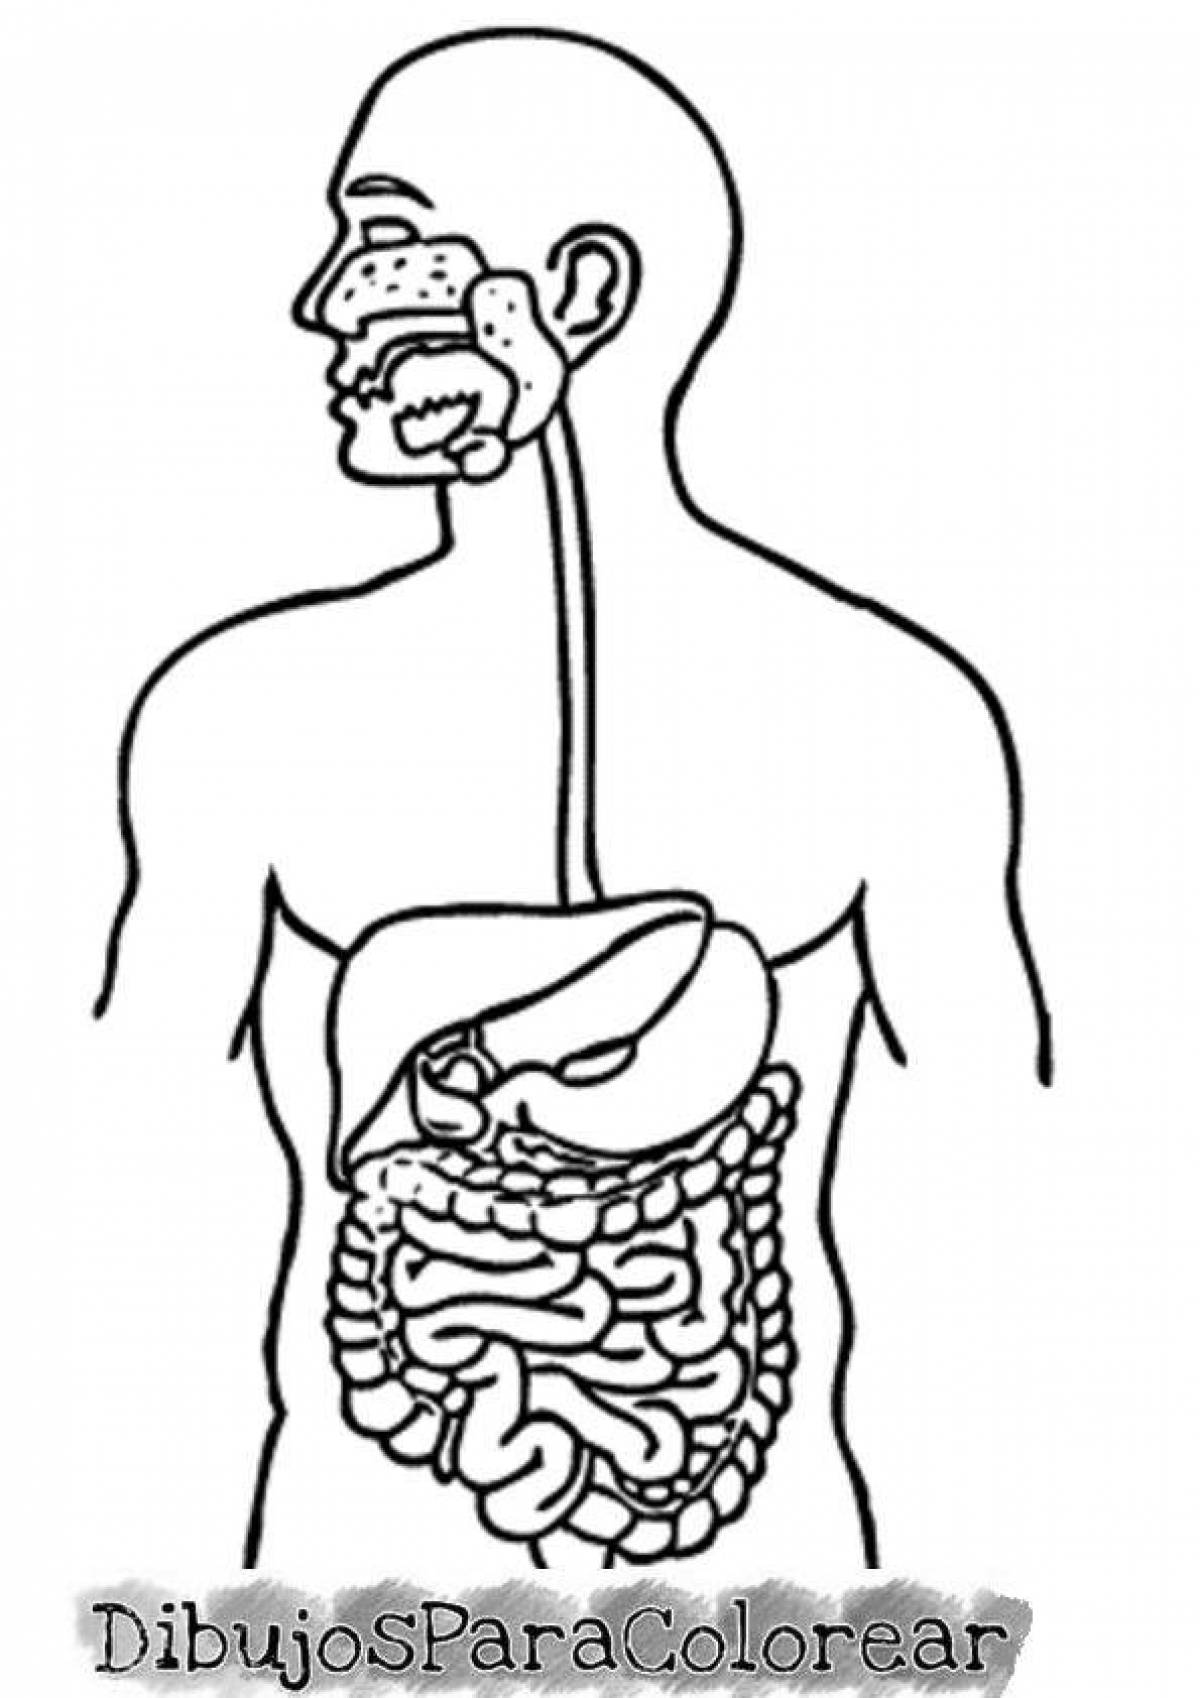 Изображения систем органов человека. Пищеварительная система человека. Строение органов пищеварения. Пищеварительные органы человека. Пищеварительная система человека схема.